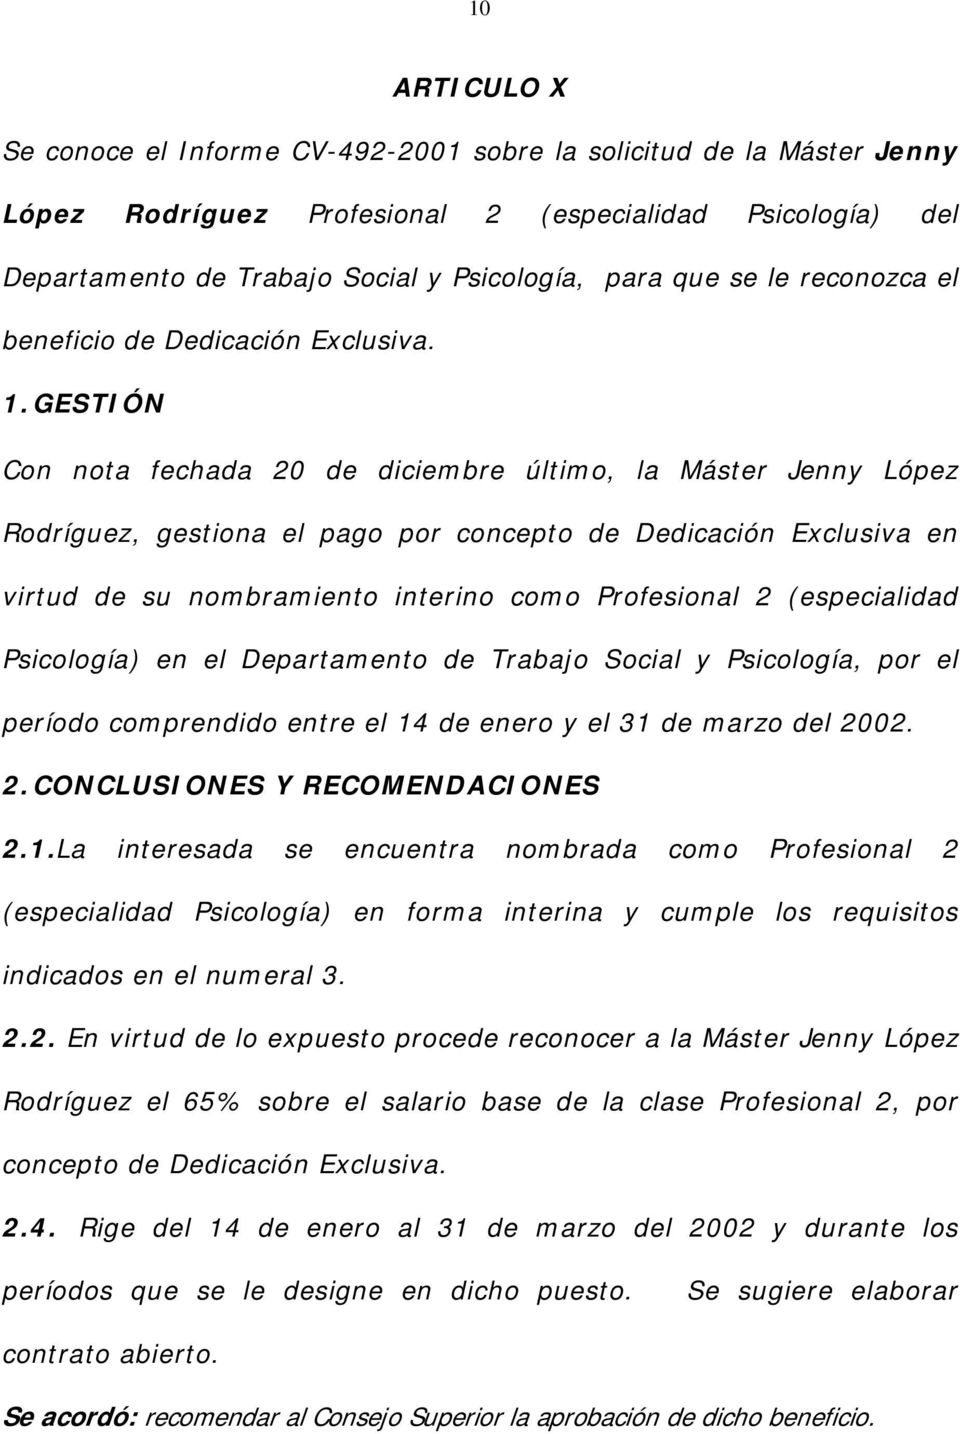 Con nota fechada 20 de diciembre último, la Máster Jenny López Rodríguez, gestiona el pago por concepto de Dedicación Exclusiva en virtud de su nombramiento interino como Profesional 2 (especialidad